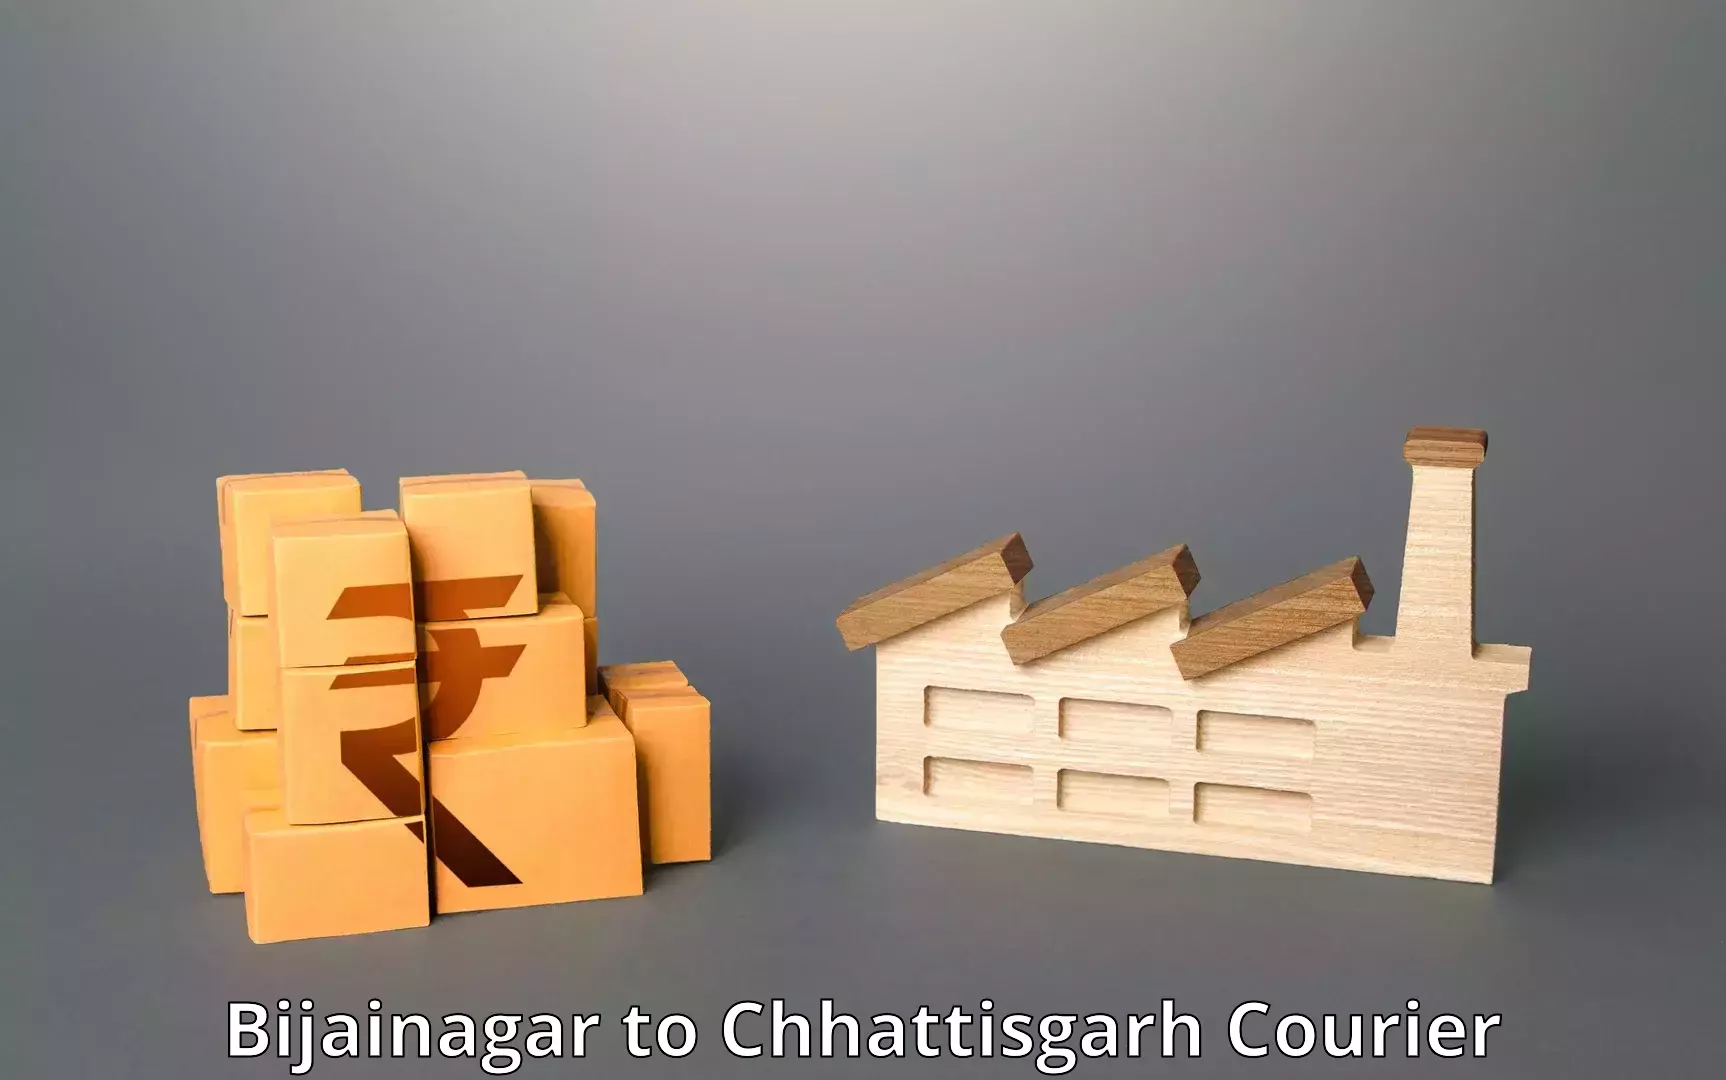 Easy access courier services Bijainagar to Chhattisgarh